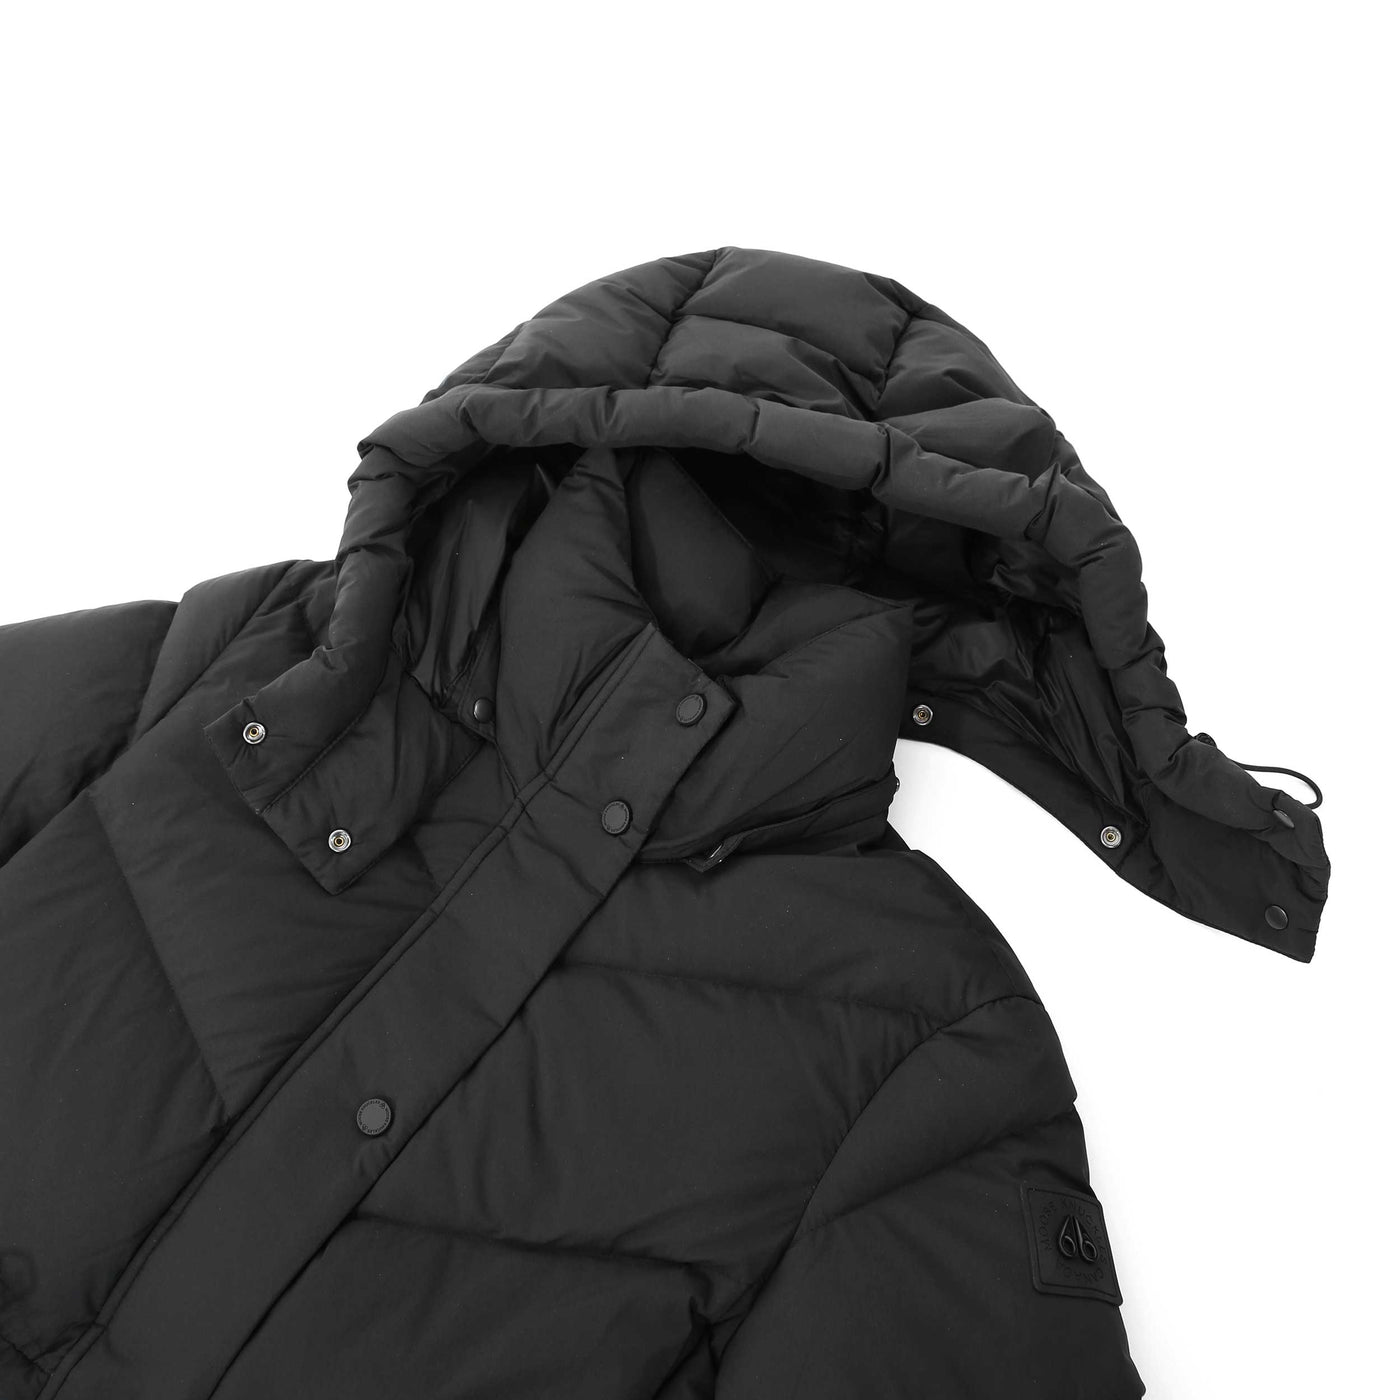 Moose Knuckles Flightweight Belle Cote Ladies Jacket in Black Detachable Hood